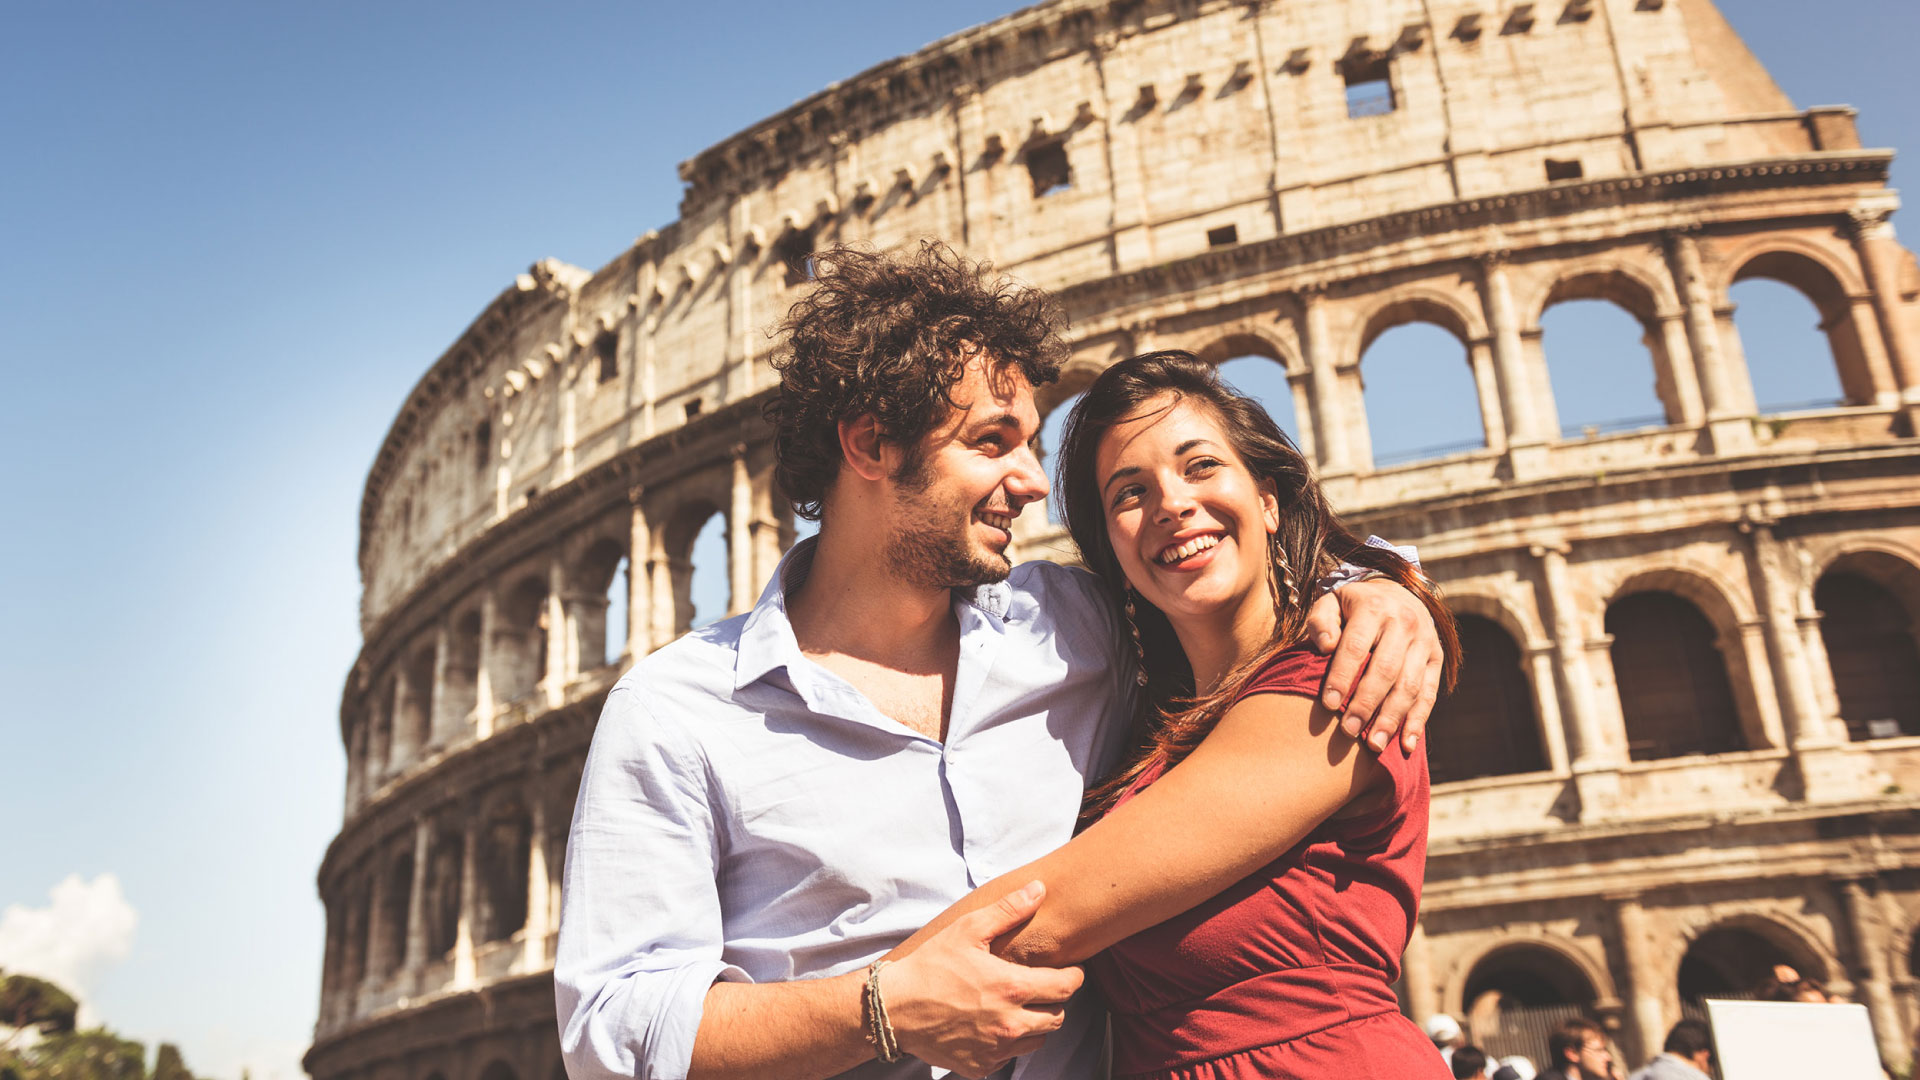 Coppia innamorata davanti al Colosseo durante un viaggio a Roma in NCC con Roman Limousine Service.